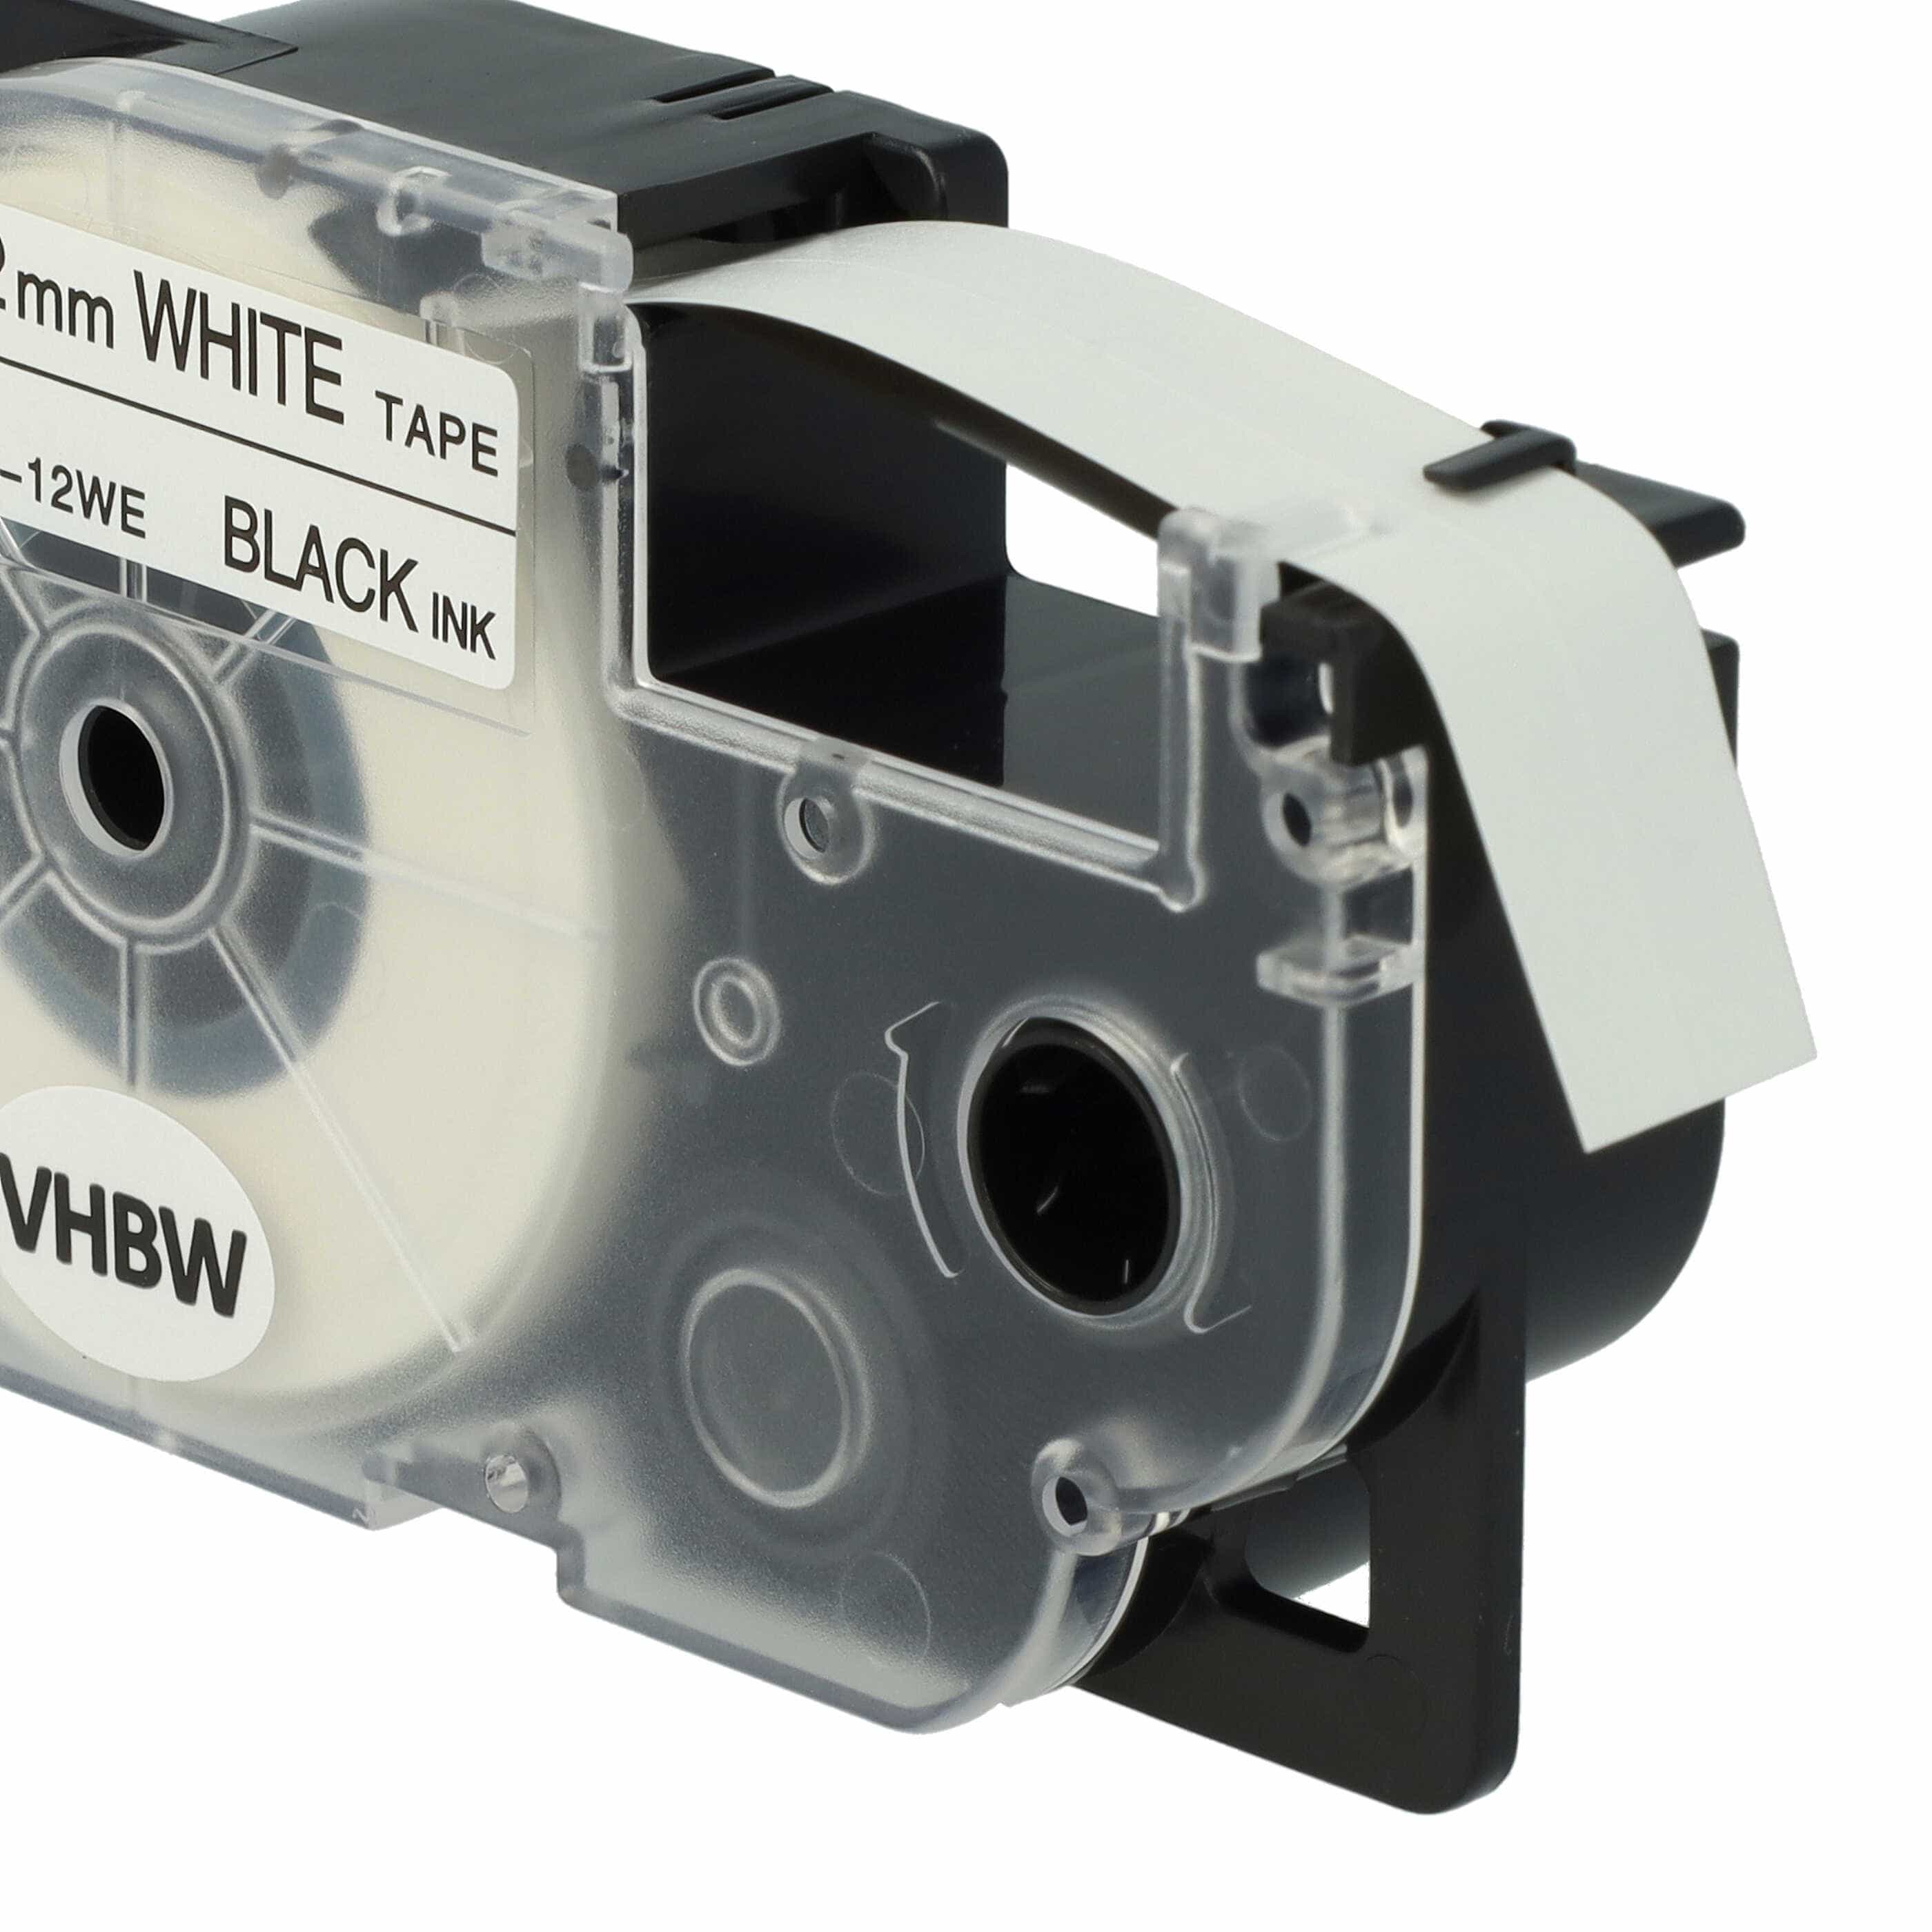 Casete cinta escritura reemplaza Casio XR-12WE, XR-12WE1 Negro su Blanco